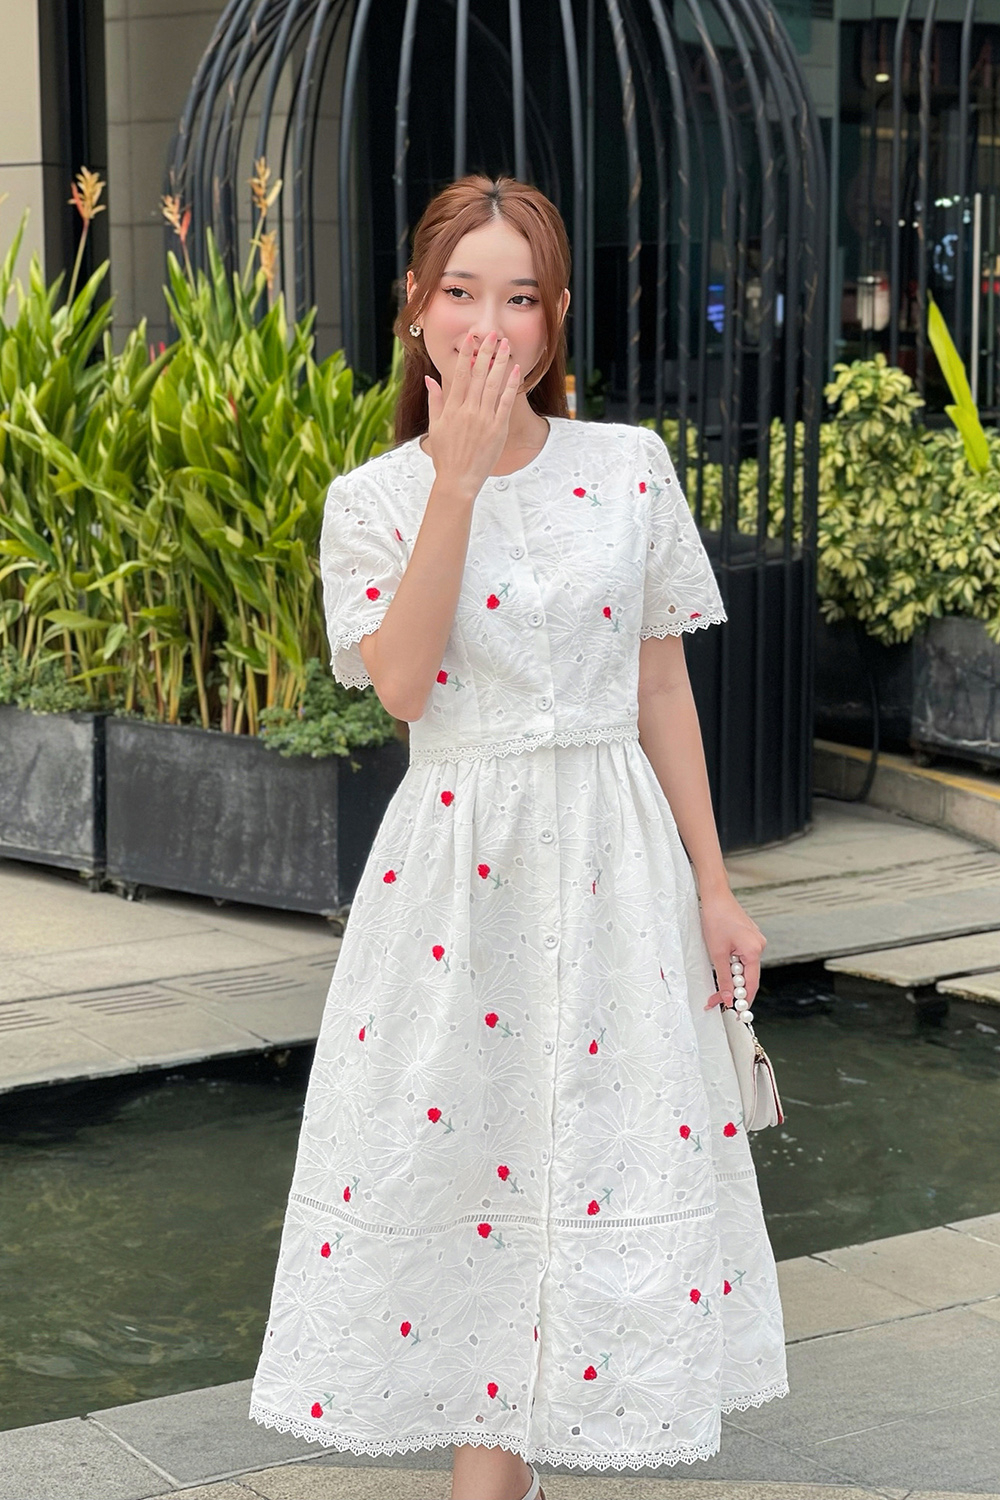 Chân váy trắng - Kim Khôi Shop cho thuê trang phục 0965238500